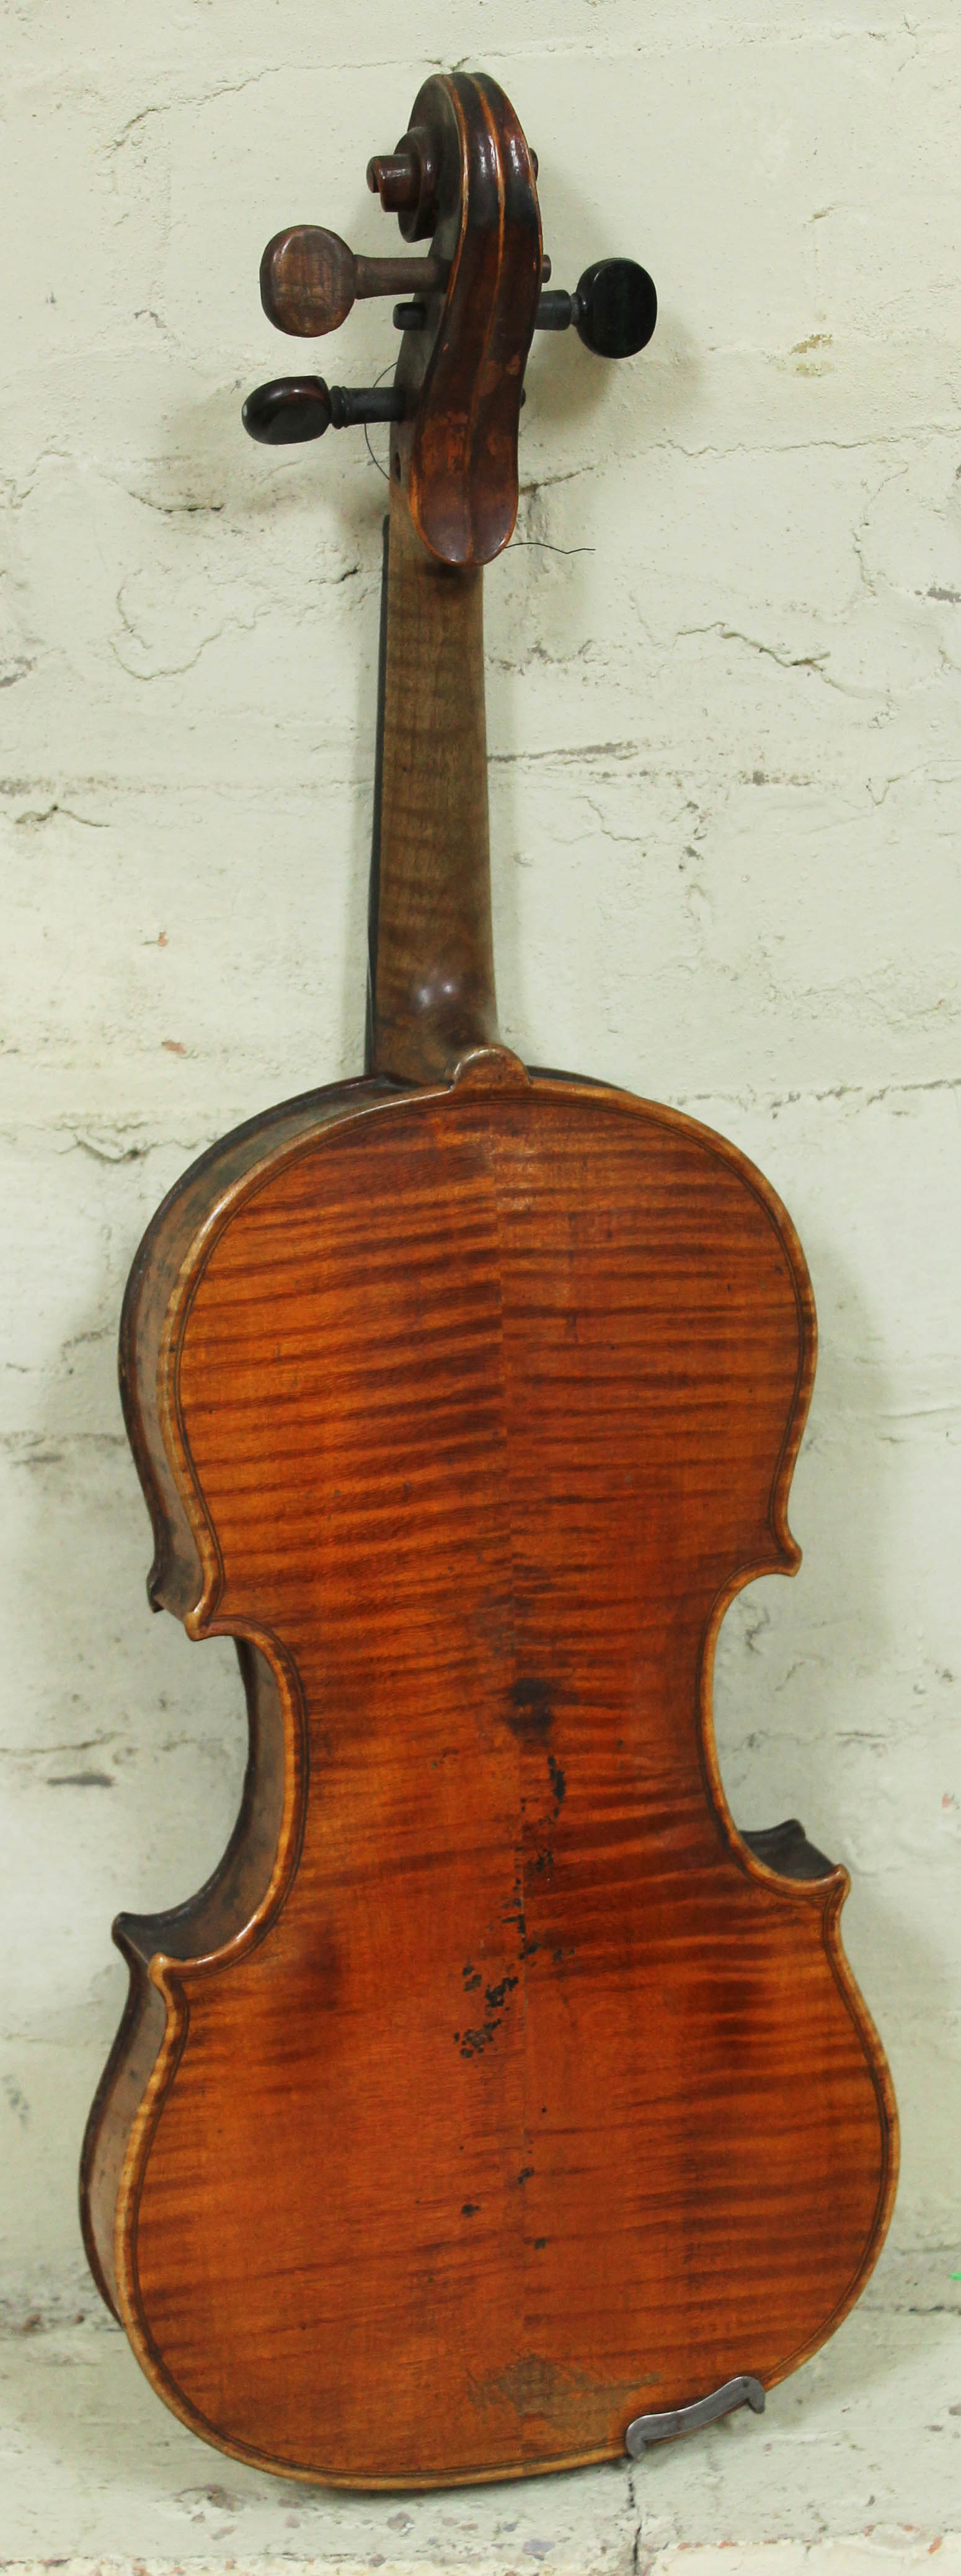 A late 19th century violin bearing label 'Antonius Stradiuarius Cremonensis Faciebat Anno 1713', - Image 3 of 22